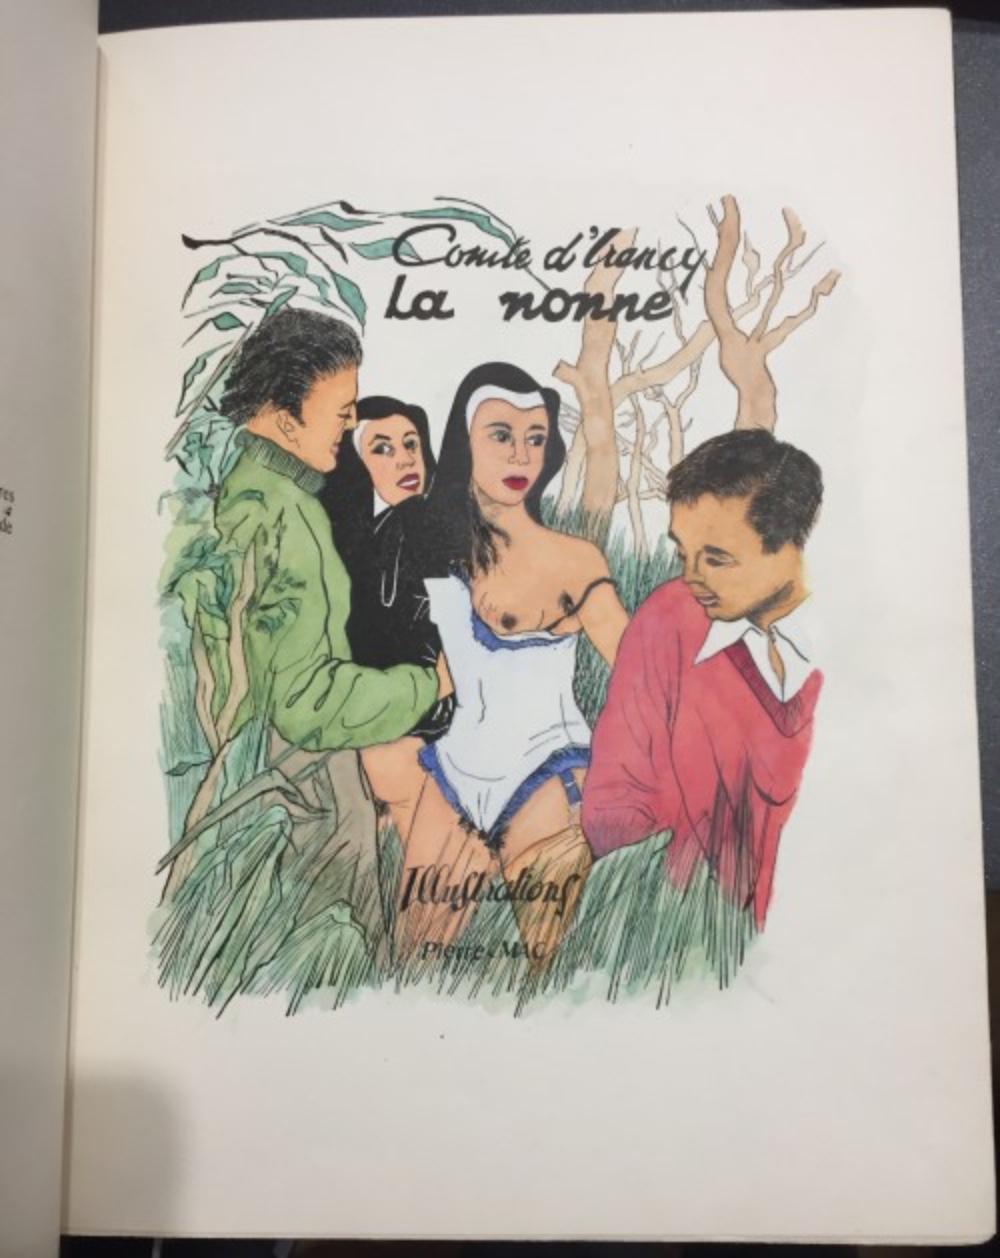 La Nonne - Rare Book with Illustrations by Foujita - 1950 ca - Art by Comte D'Irancy Eric Losfeld